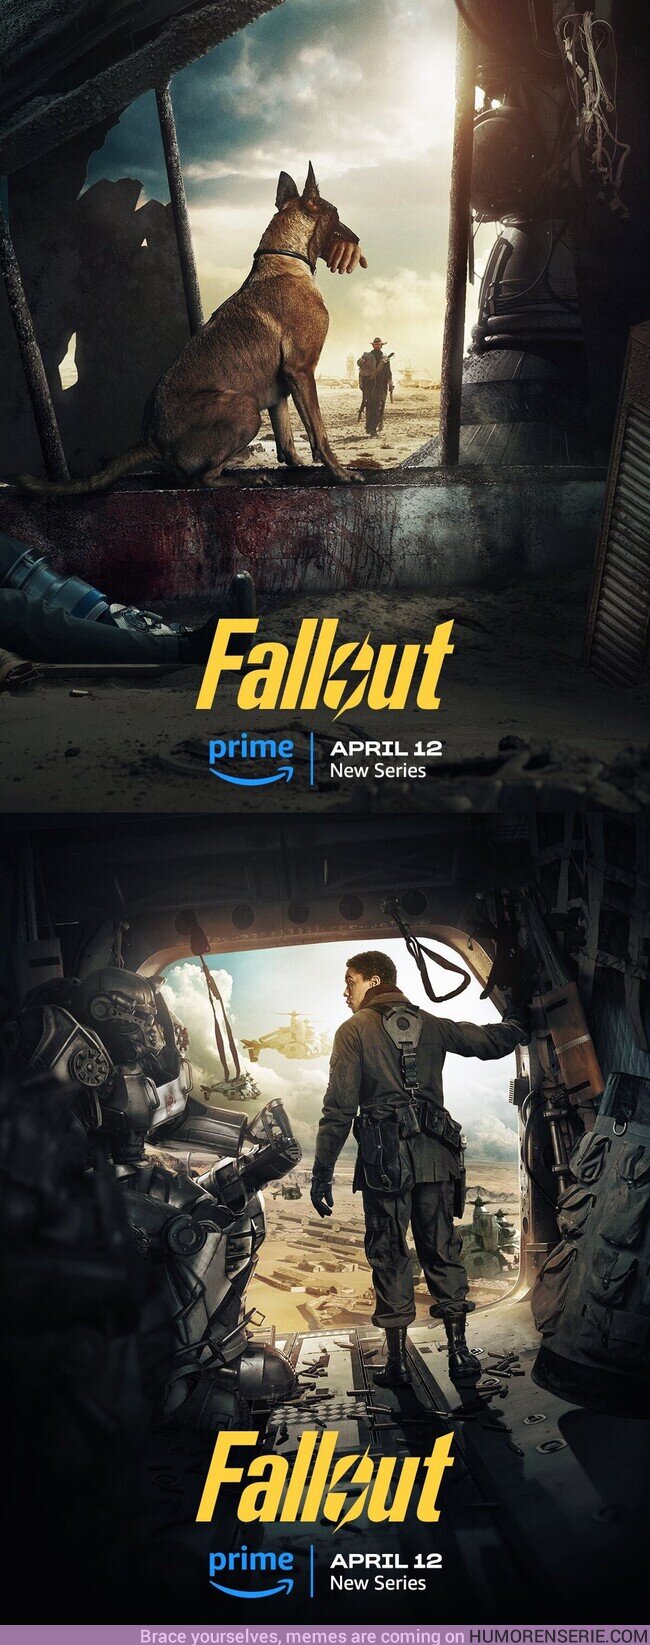 143968 - Ya tenemos pósters oficiales de FALLOUT, la nueva serie de Prime inspirada en el videojuego